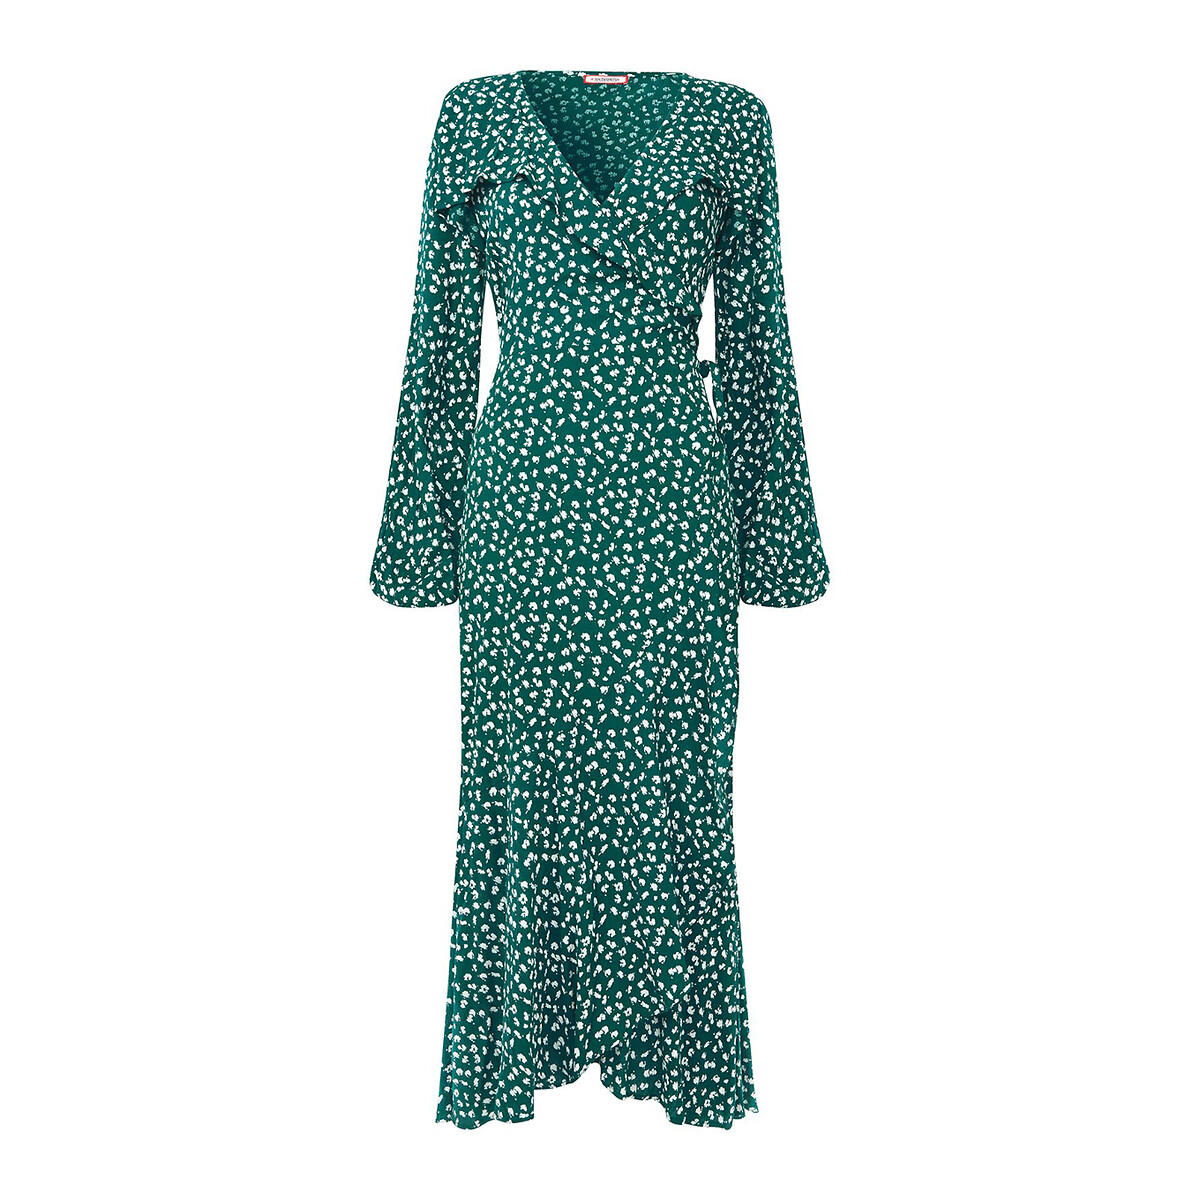 Платье-миди С вырезом с запахом и принтом 50 зеленый LaRedoute, размер 50 - фото 4